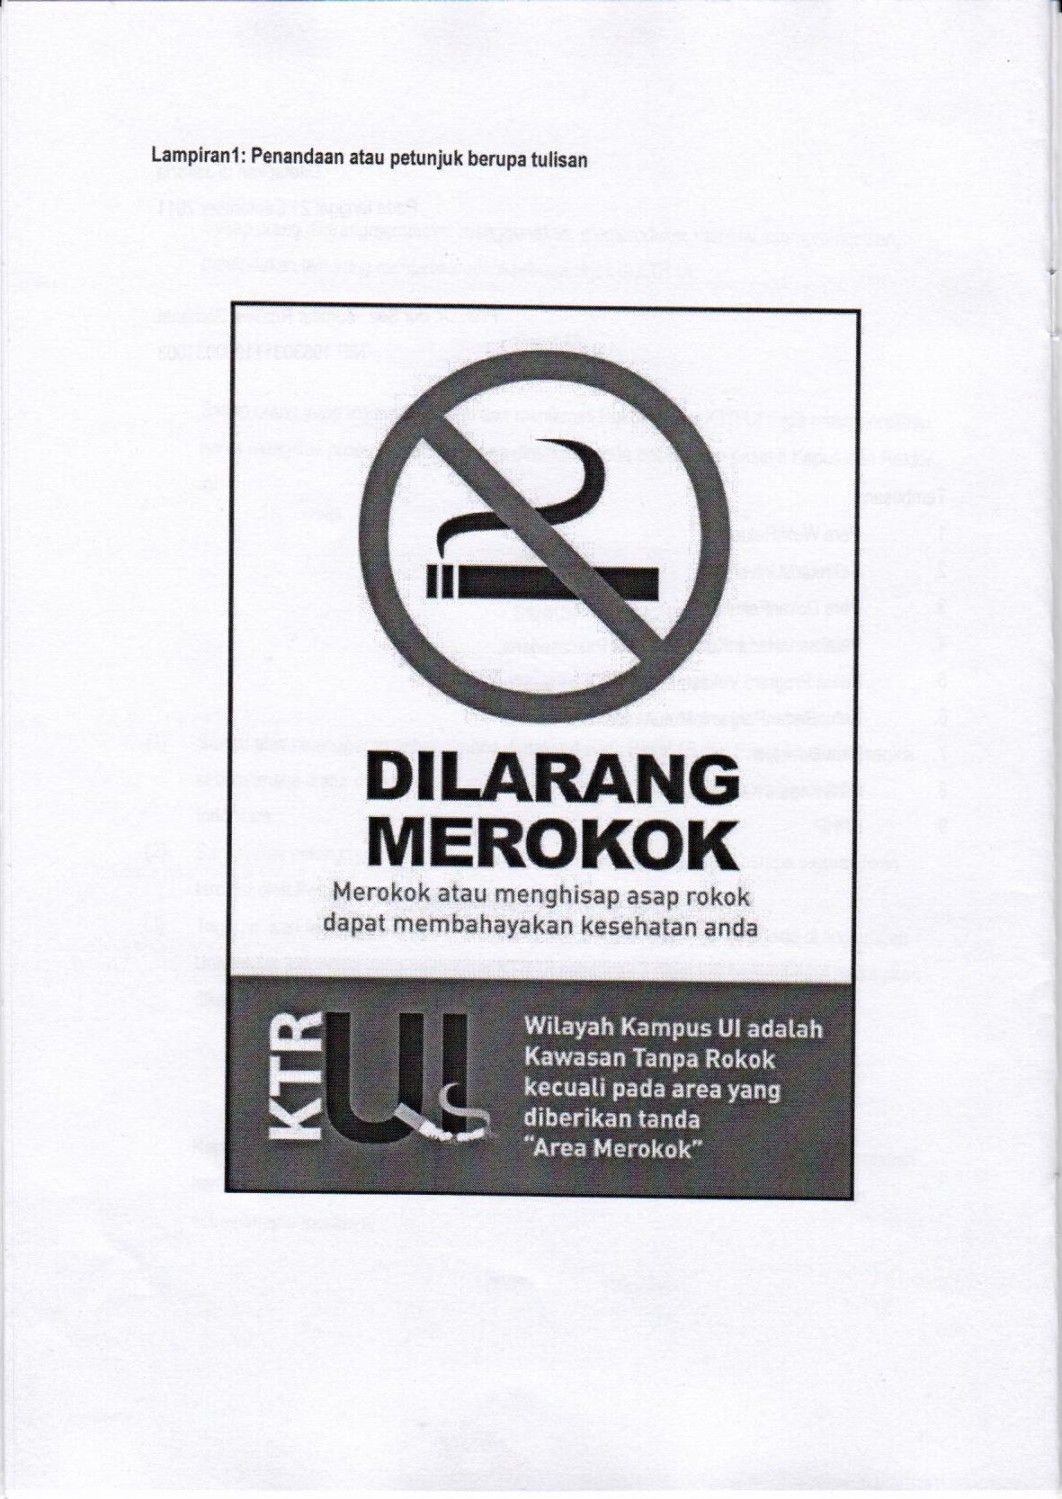 poster tentang pingatan aatu larangan merokok